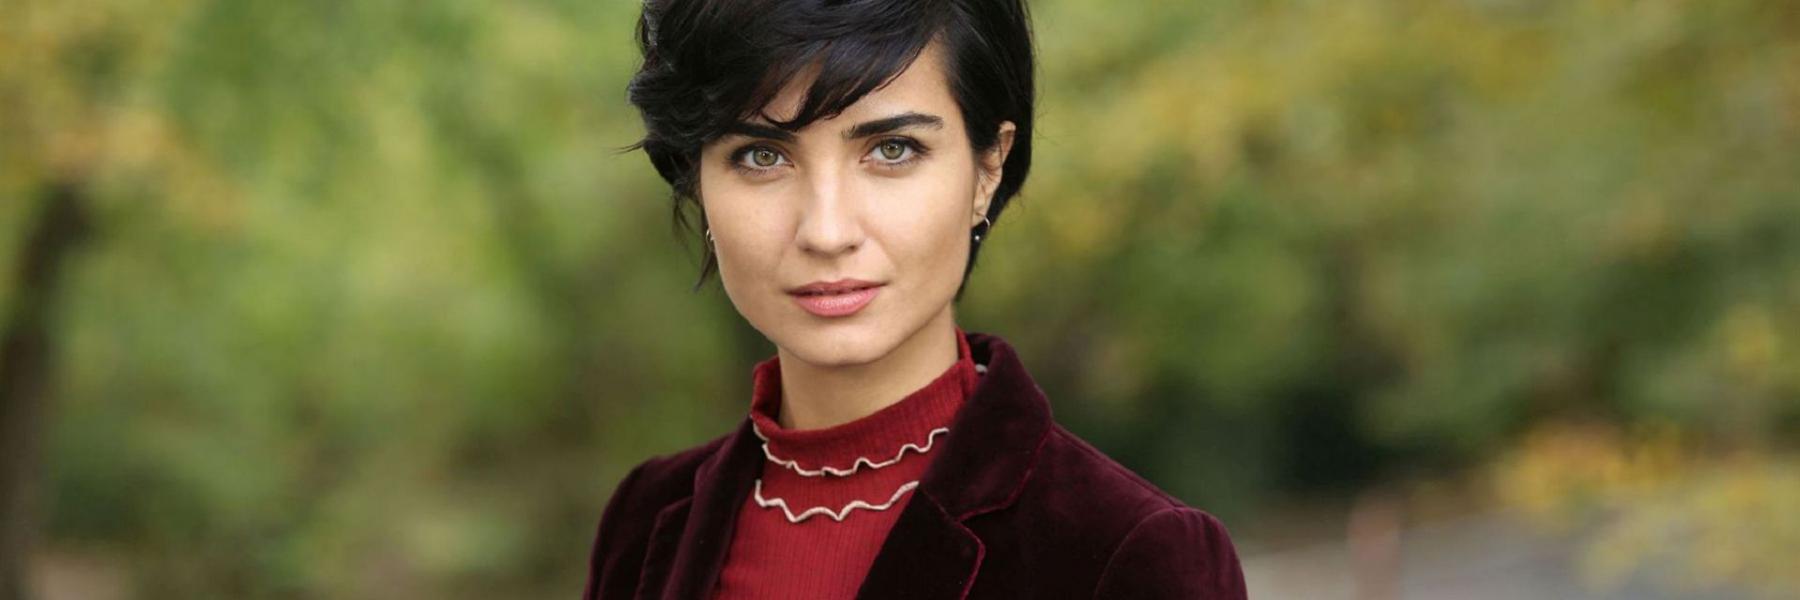 الممثلة التركية توبا تنفصل عن حبيبها بعد علاقة دامت لـ 4 سنوات!